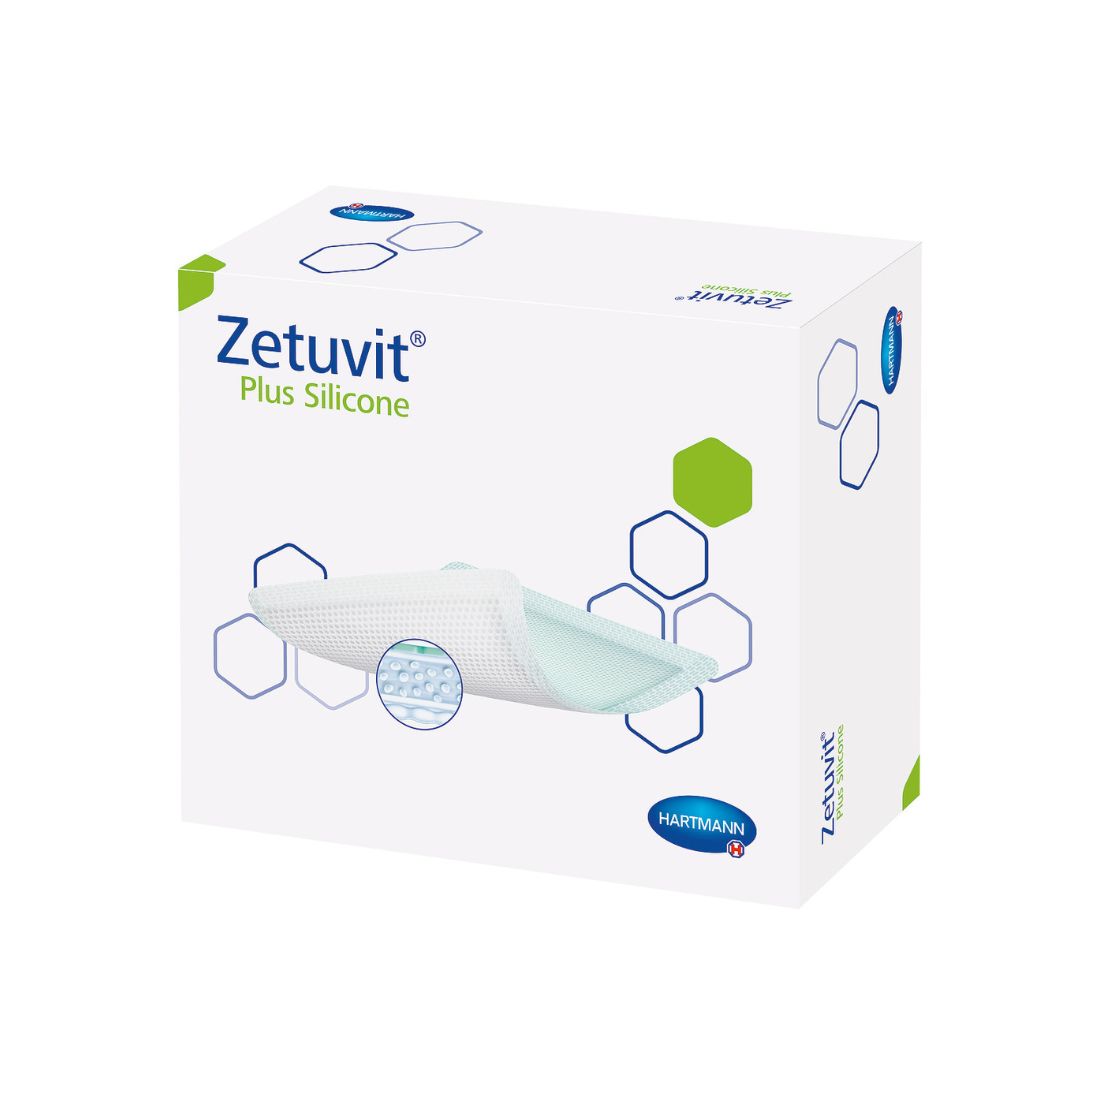 Zetuvit Plus Silicone Wundauflage mit Silikon-Wundkontaktschicht